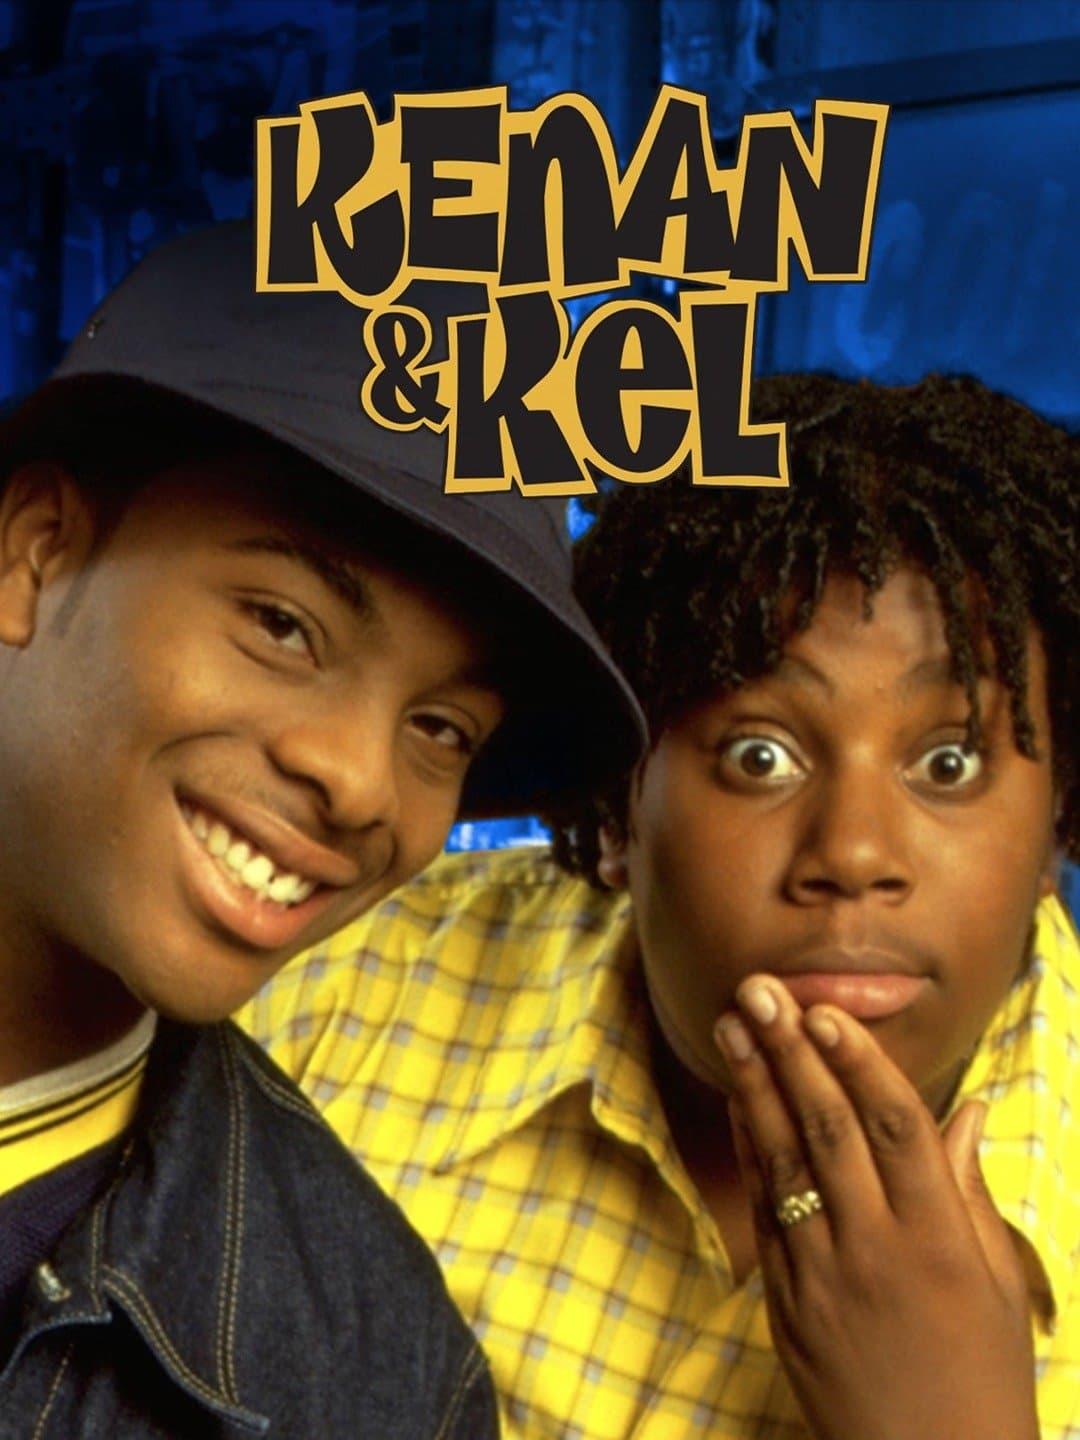 Kenan & Kel poster